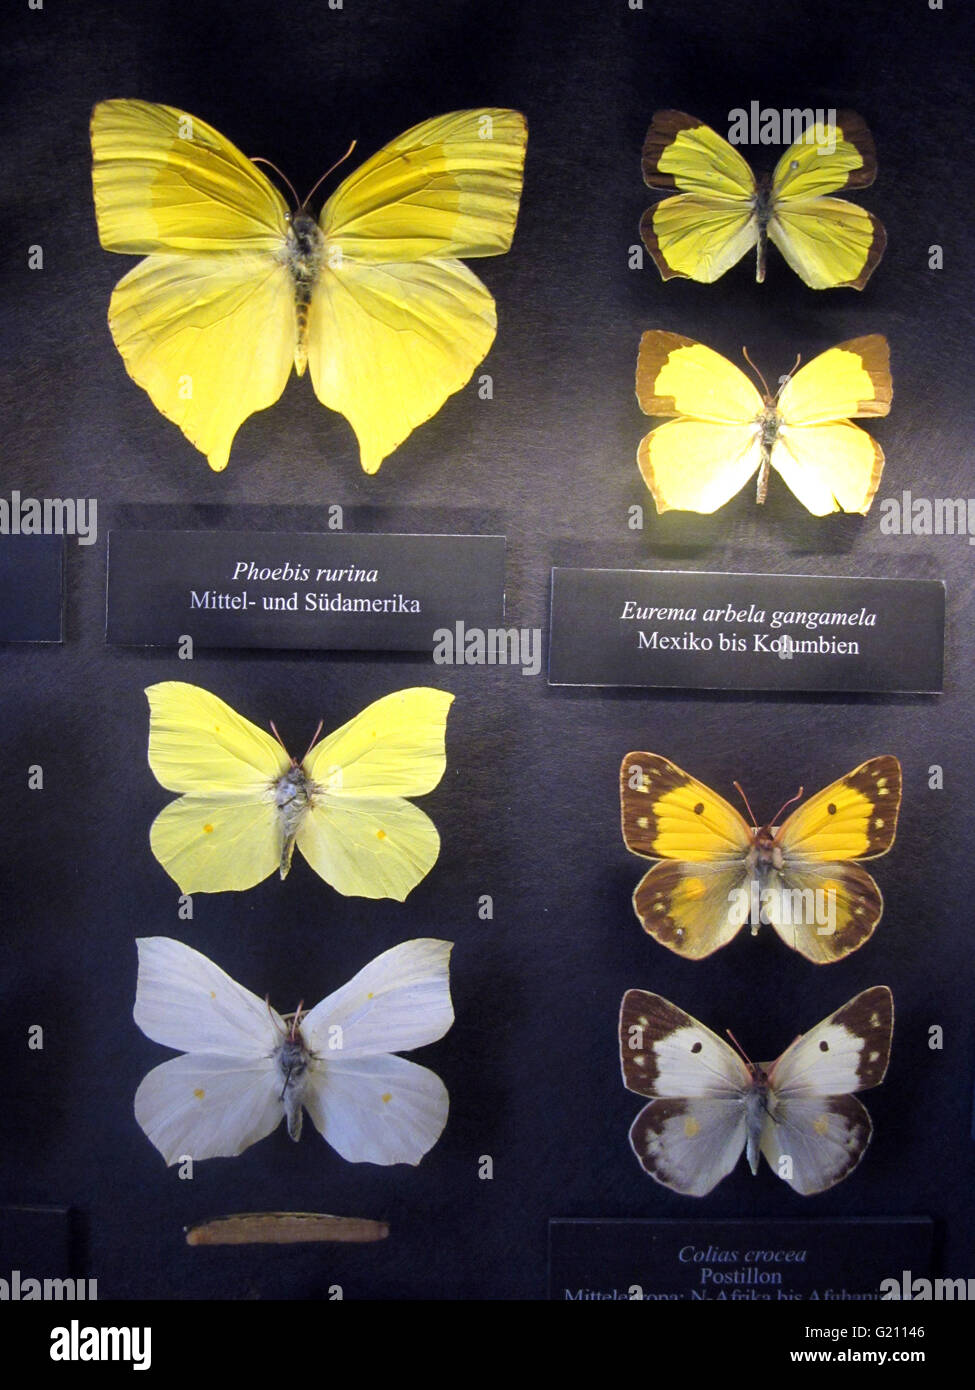 Österreich - Wien. Verschiedene Schmetterlinge auf Anzeige am Museum of Natural History (Naturhistorischen Museum). Abteilung Entomolo Stockfoto